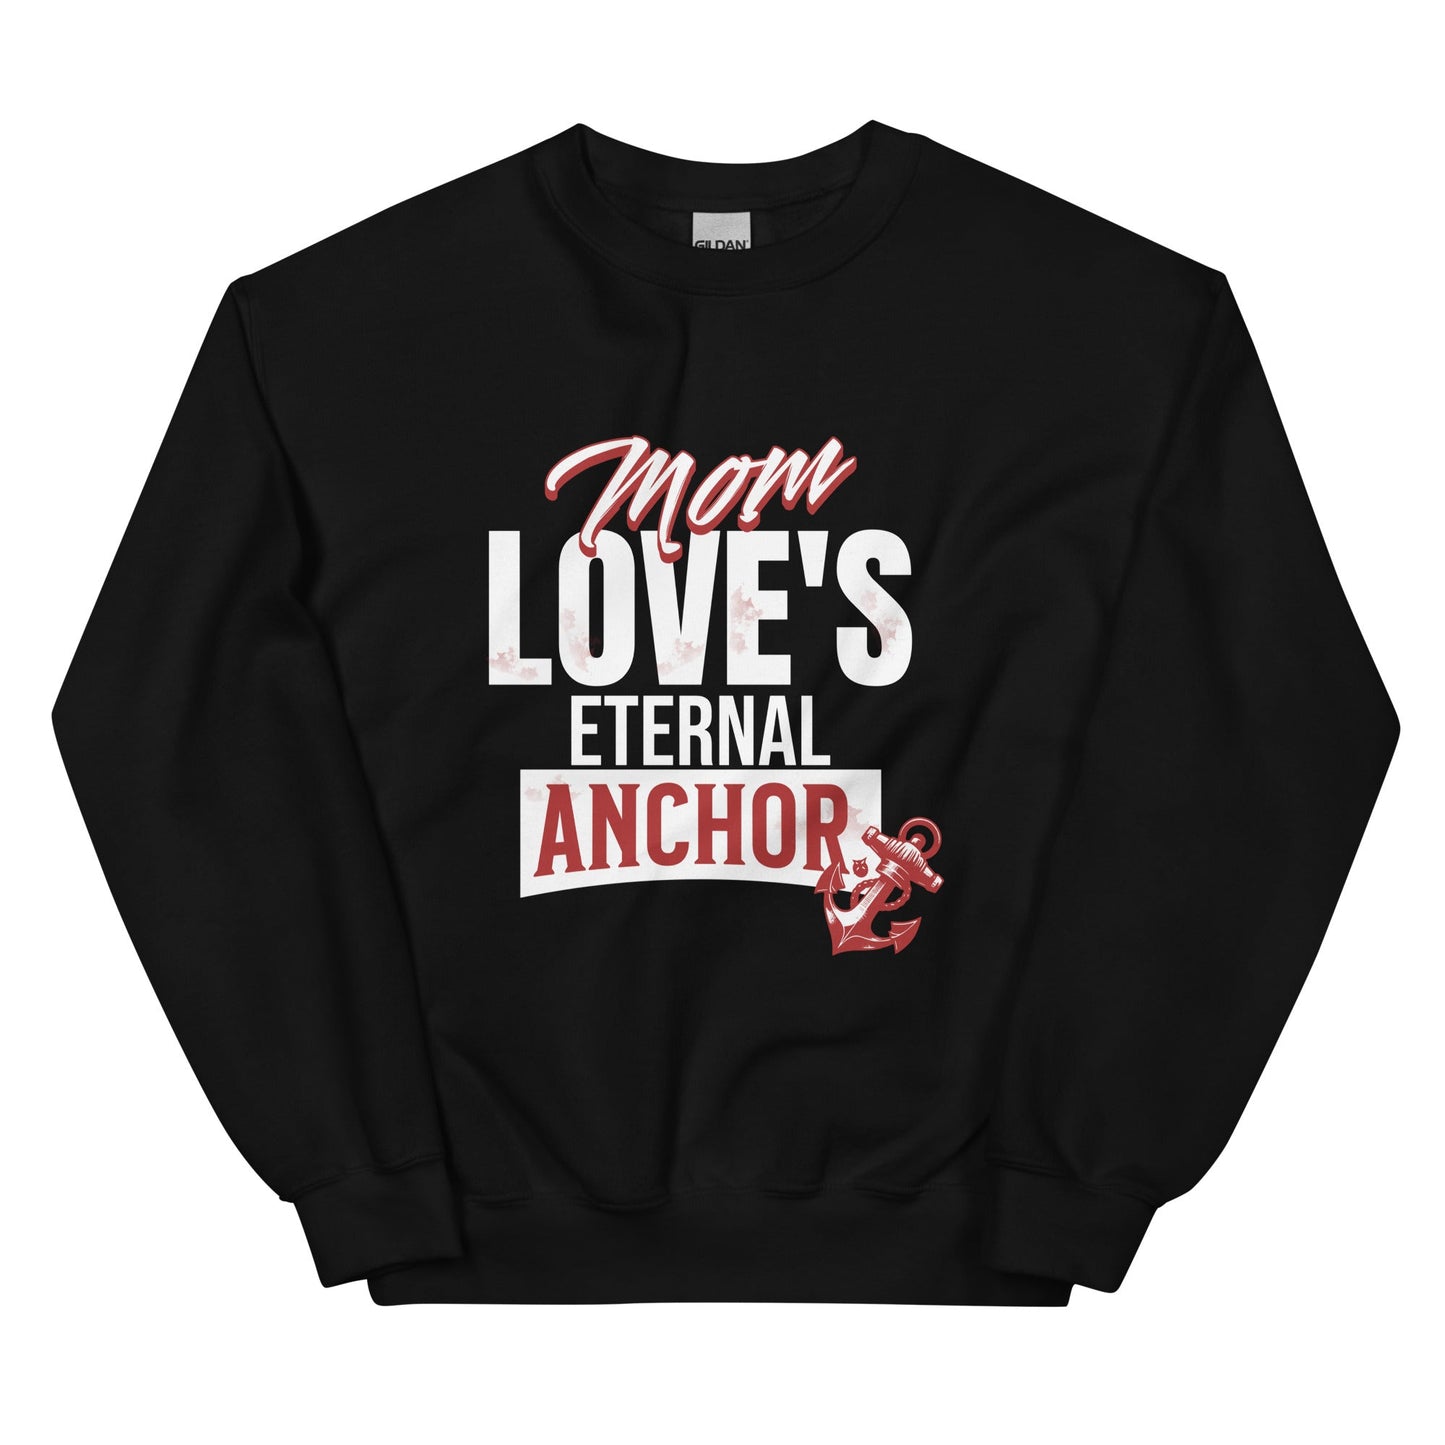 Mom Love's Eternal Anchor Sweatshirt-Black-S-mysticalcherry